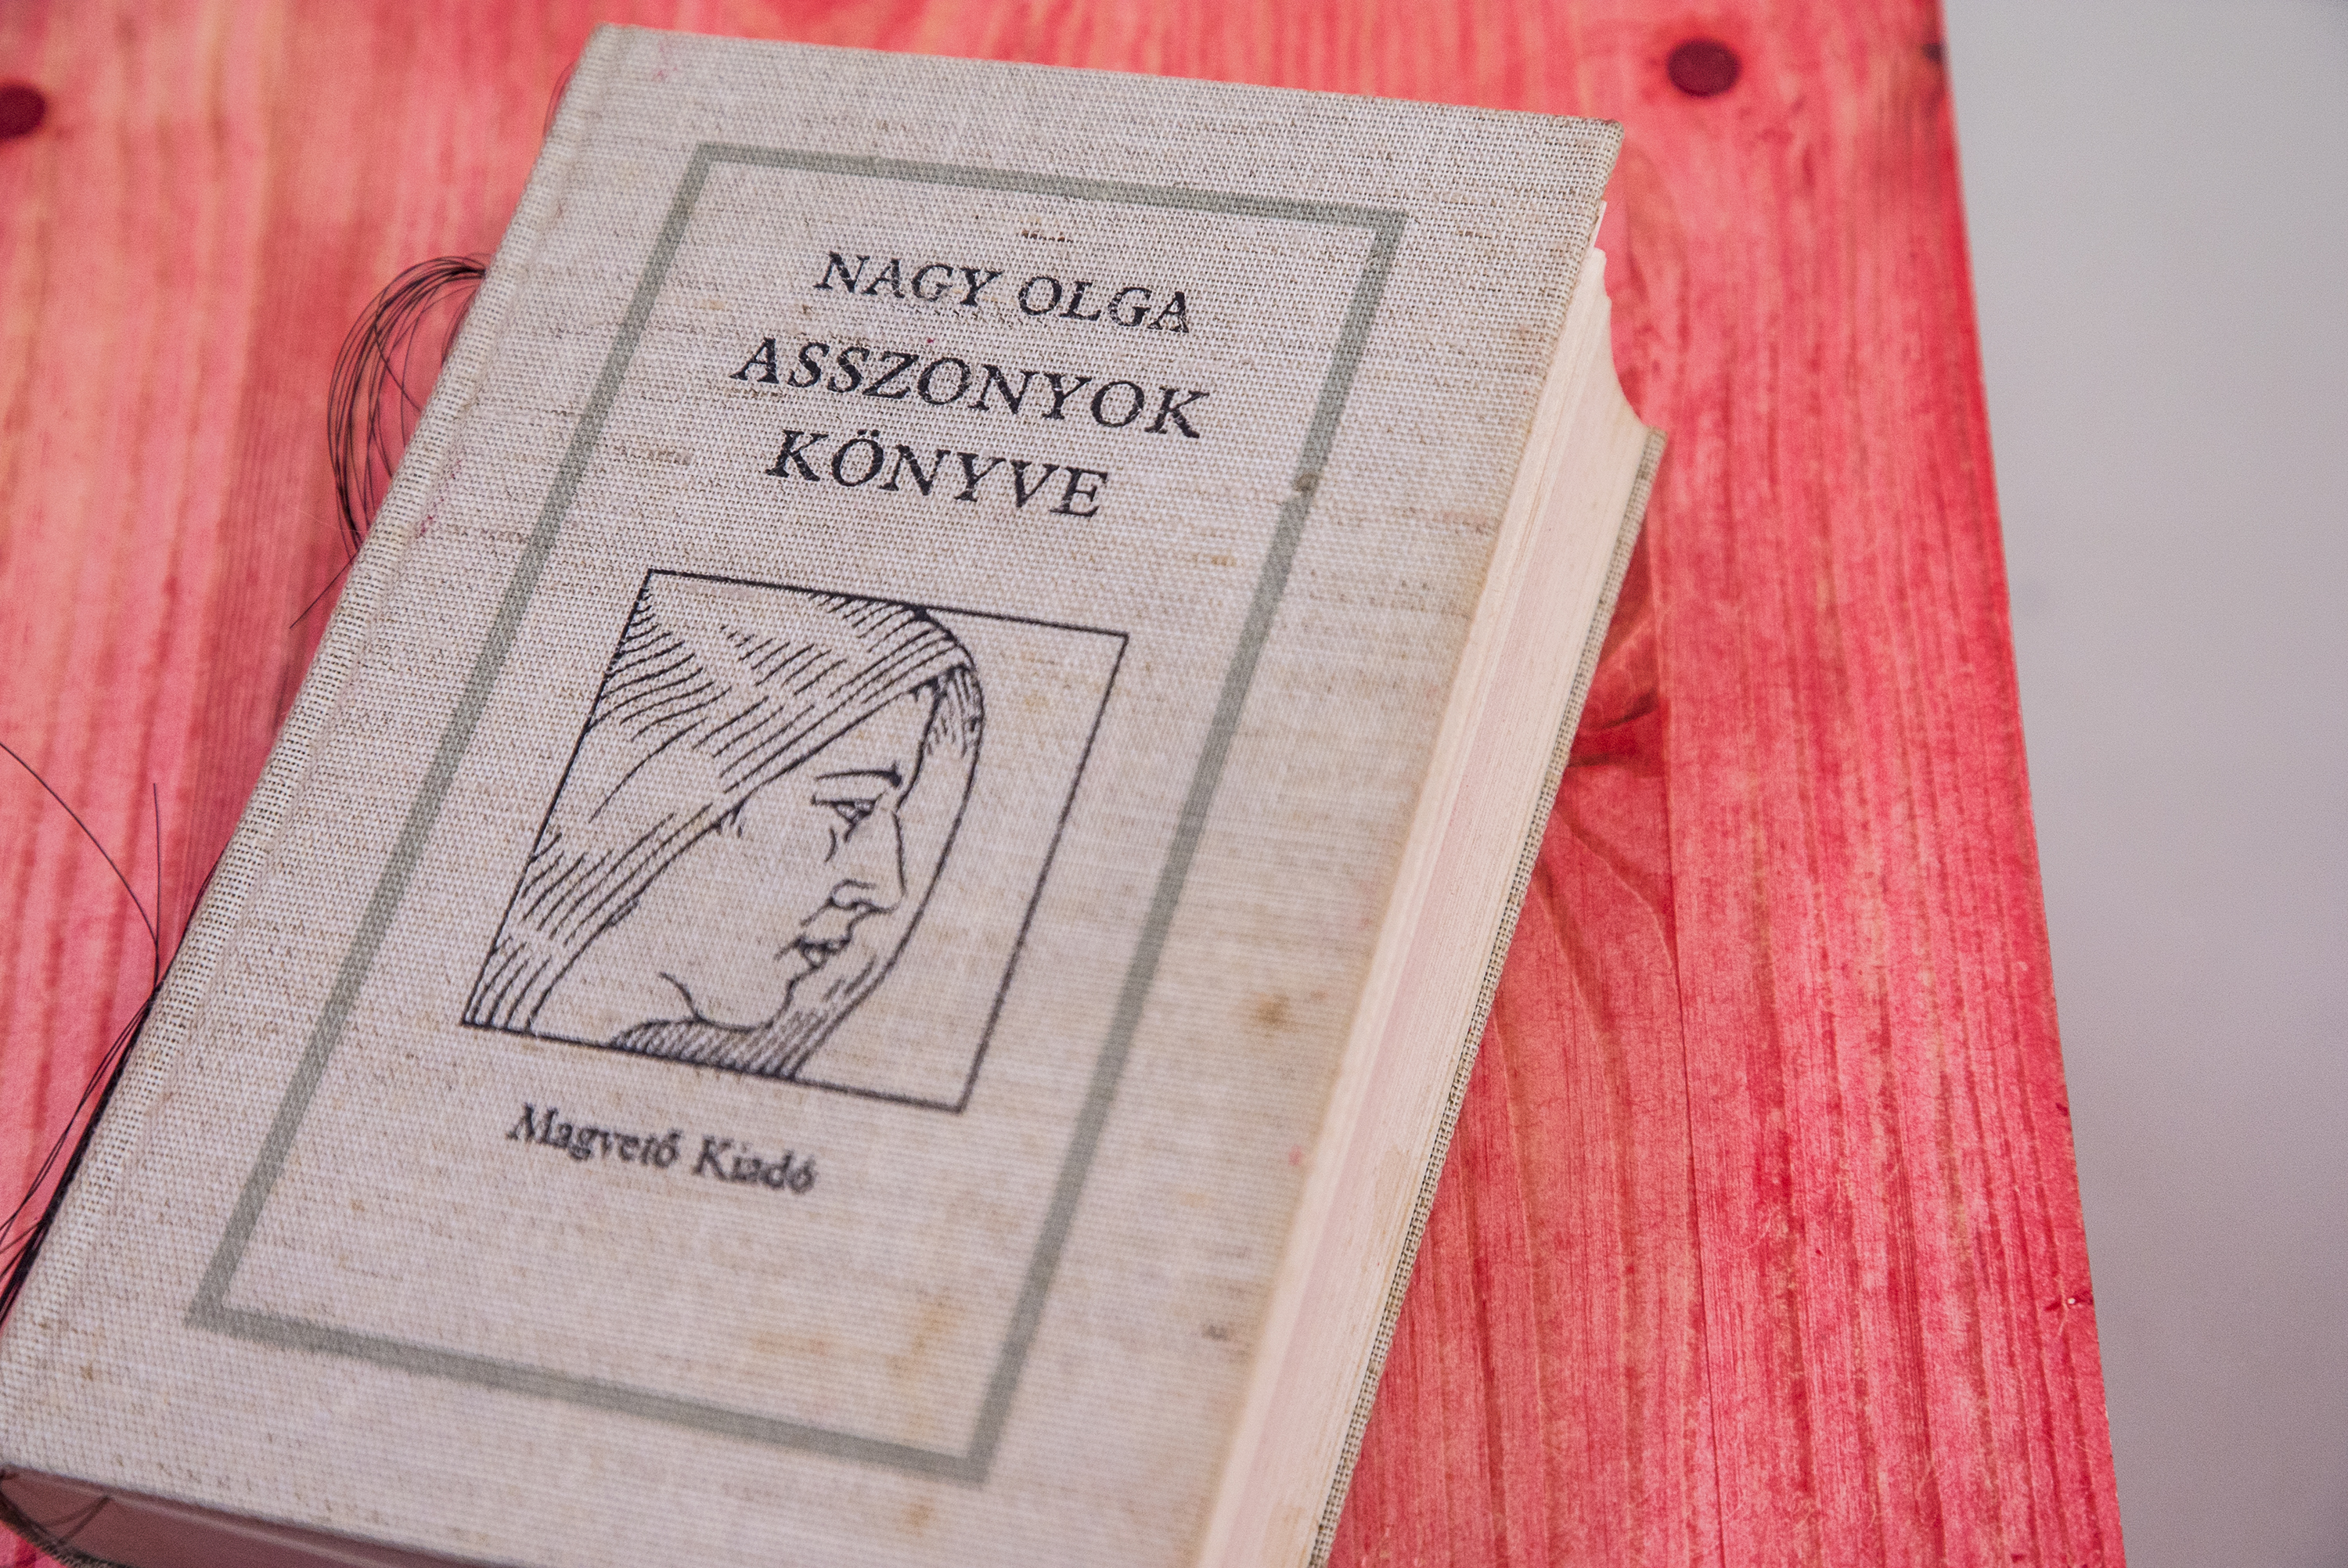 Nagy Olga könyve